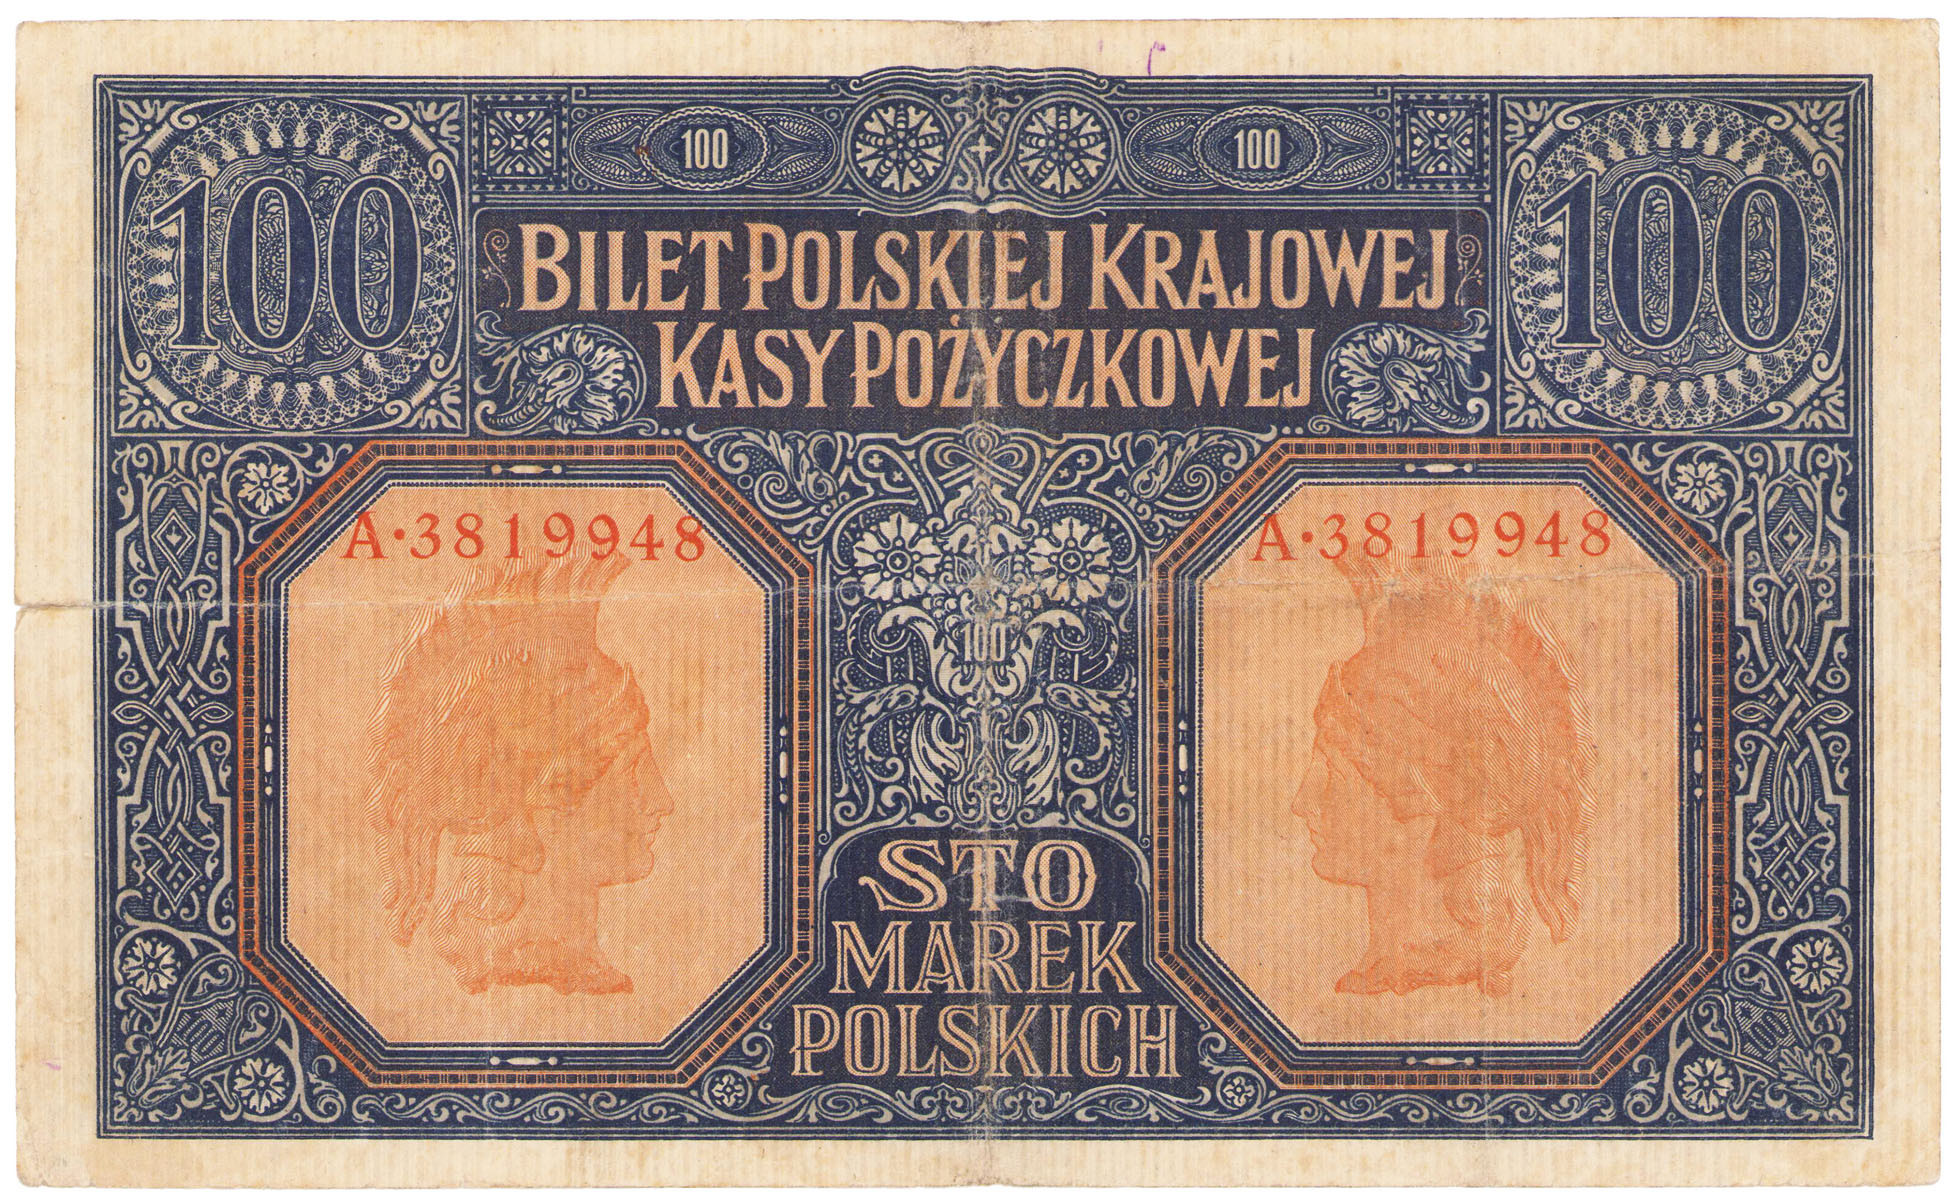 100 marek polskich 1916 seria A, Generał - RZADKOŚĆ R4